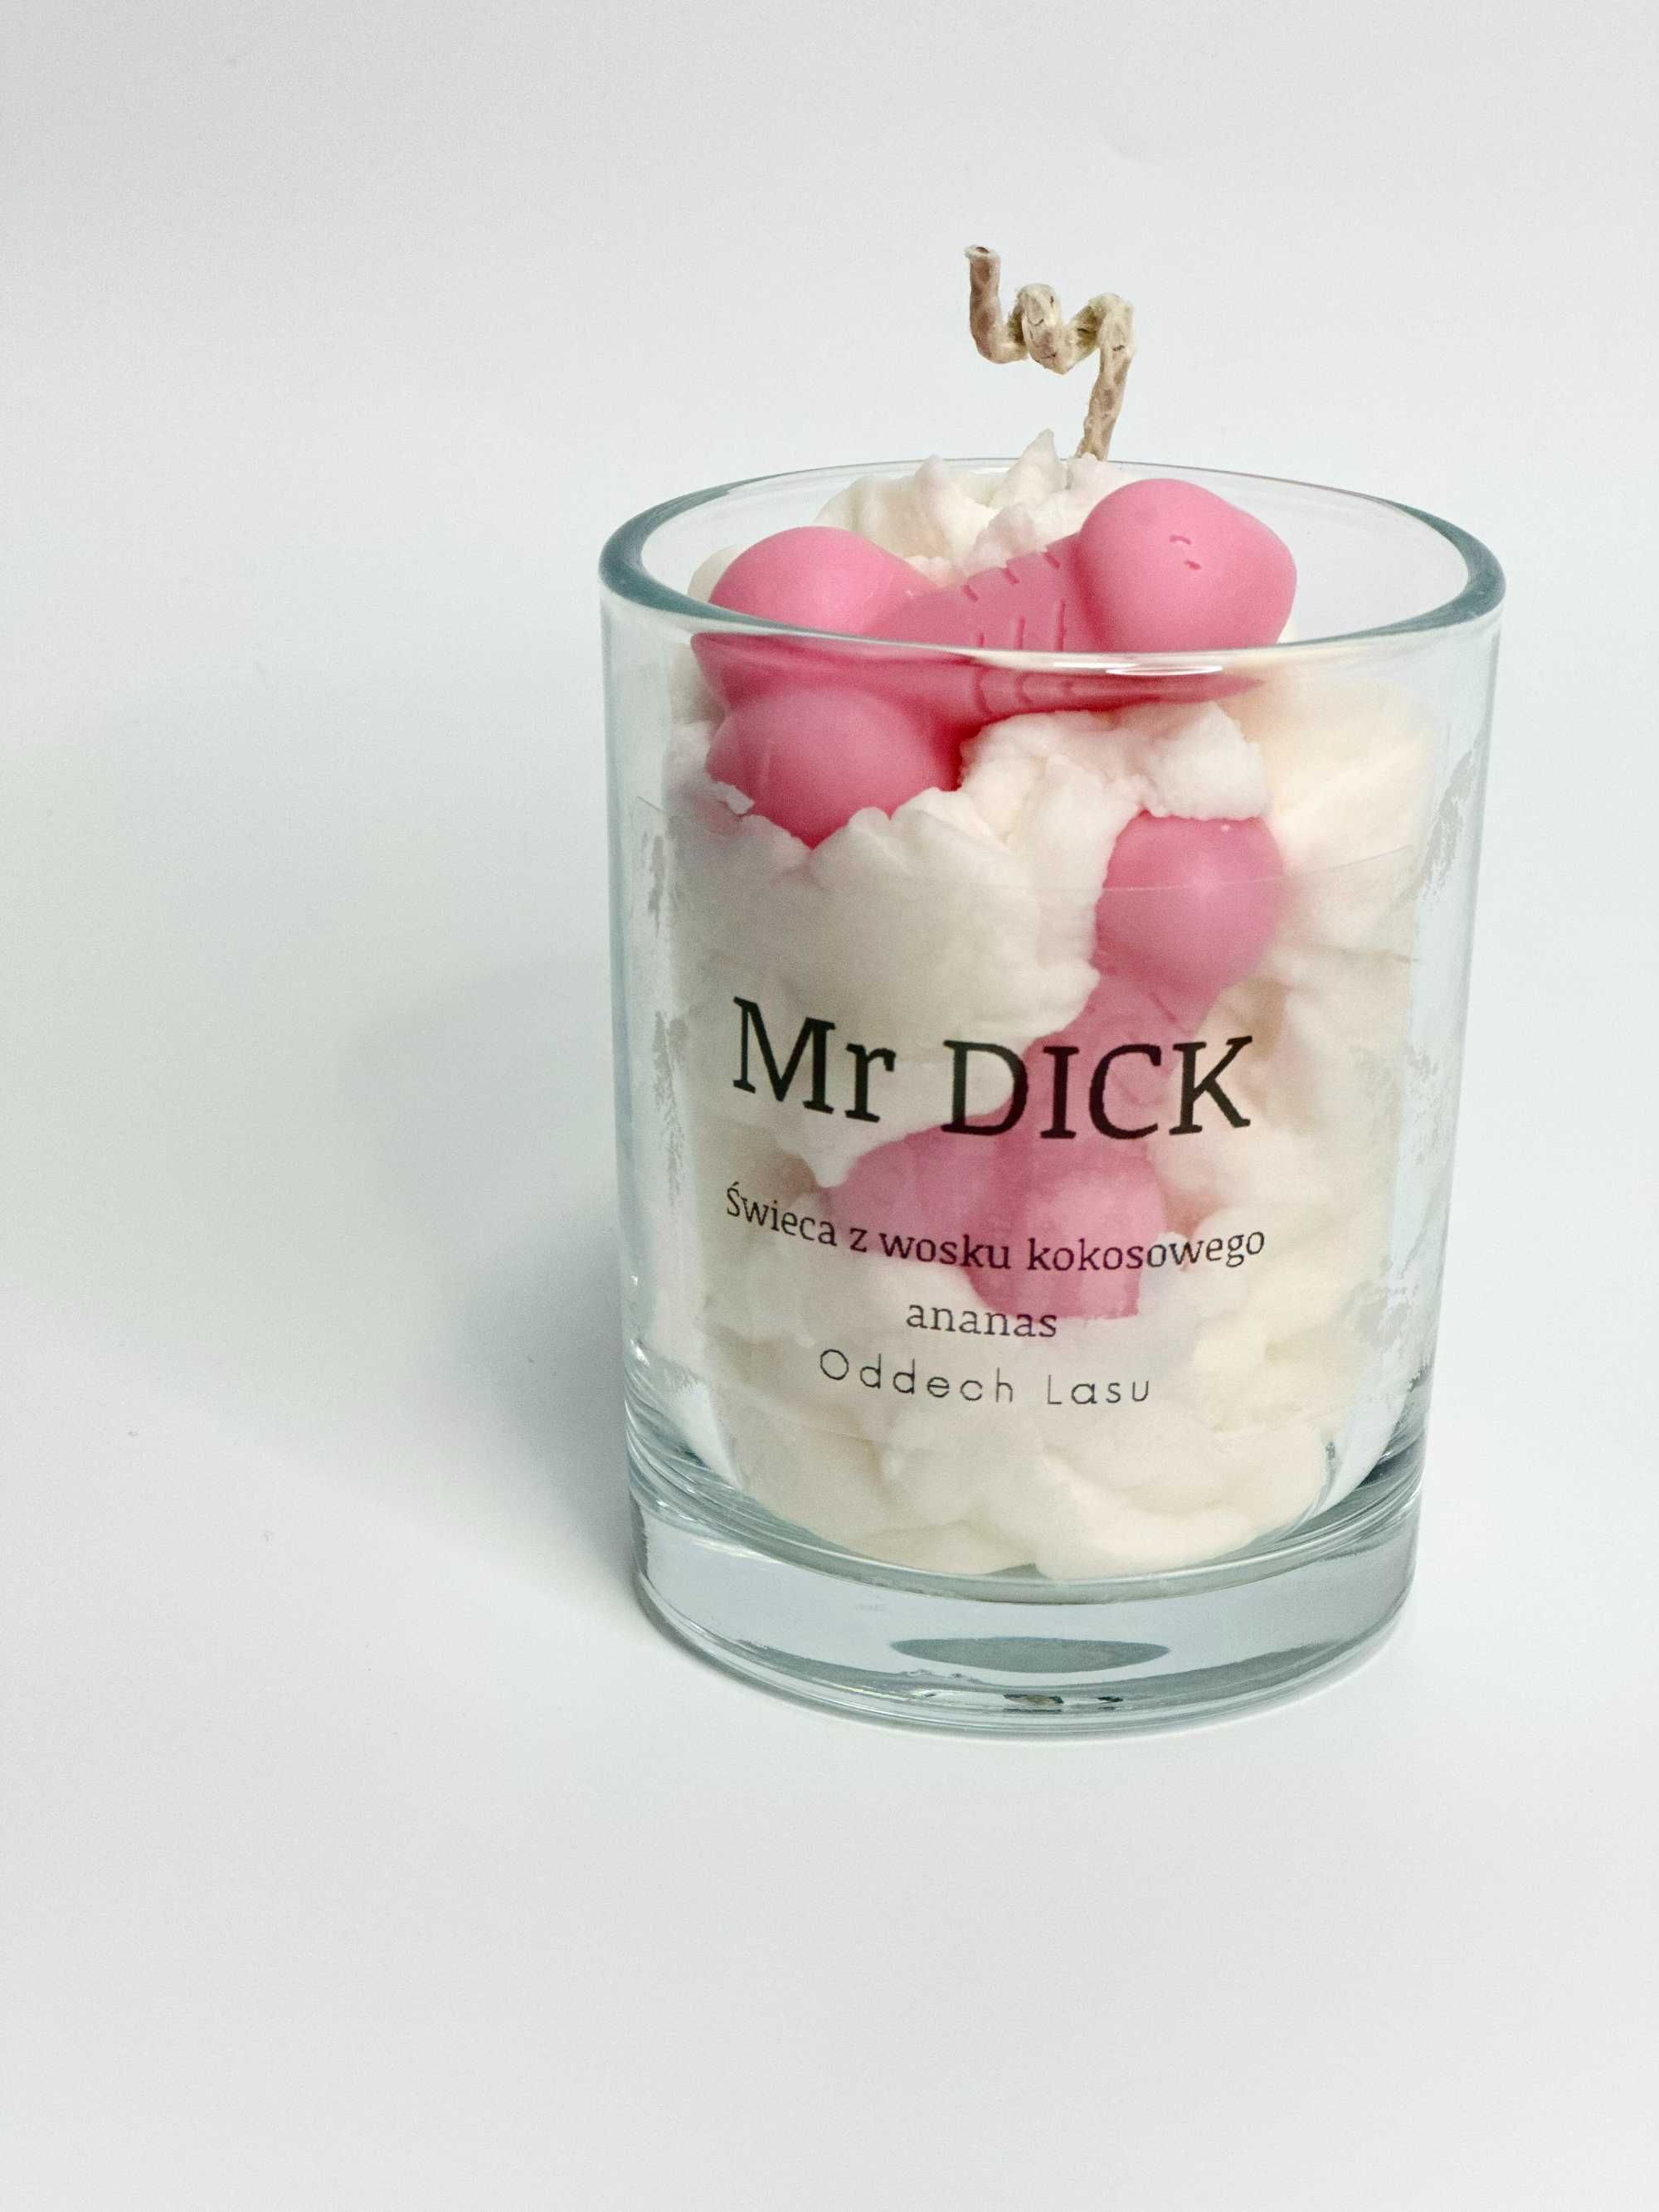 Mr Dick, świeca z wosku kokosowego, zapachowa, zalewana w szkle